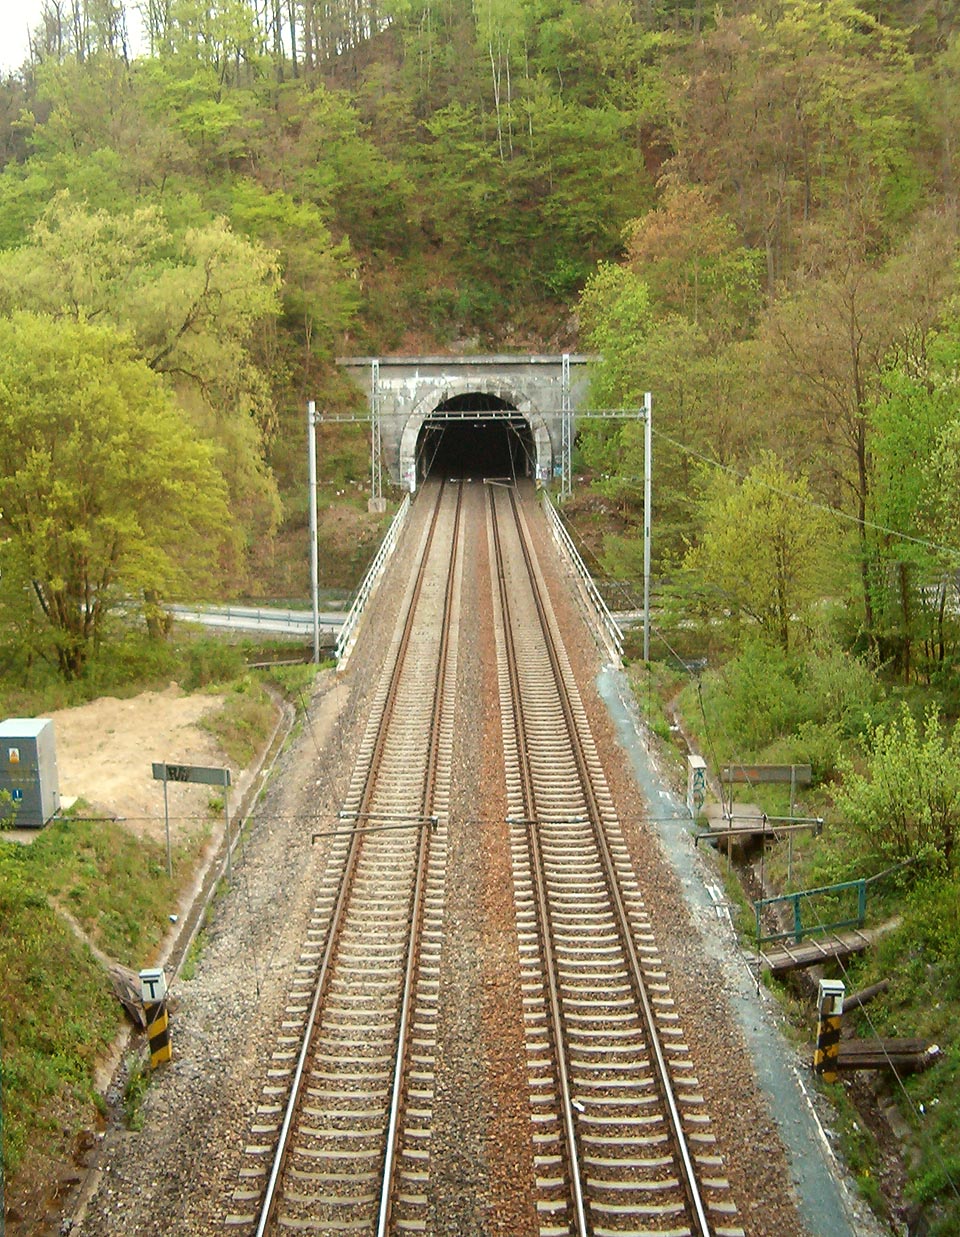 Pohled na Blanenský tunl č. 3 od severu, z jižního portálu <a href=/Tema/Blanensk%C3%BD%20tunel%20%C4%8D.%204>Blanenského tunelu č. 4</a>. Na plácku u reléové skříně vlevo stával přibližně do roku 2000 strážní domek, mezi tunely překonává trať řeku <a href=/Tema/Svitava>Svitavu</a>.